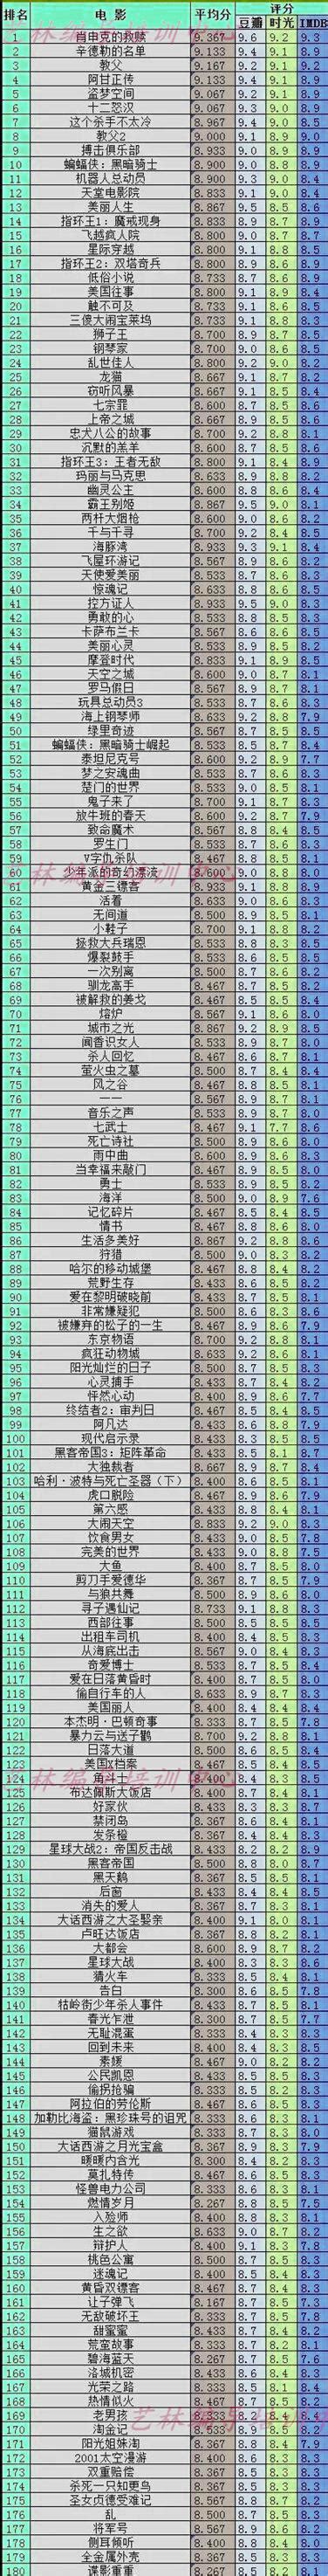 日本悬疑电影排行榜前十名-重力小丑上榜(豆瓣评分达到8.0)-排行榜123网